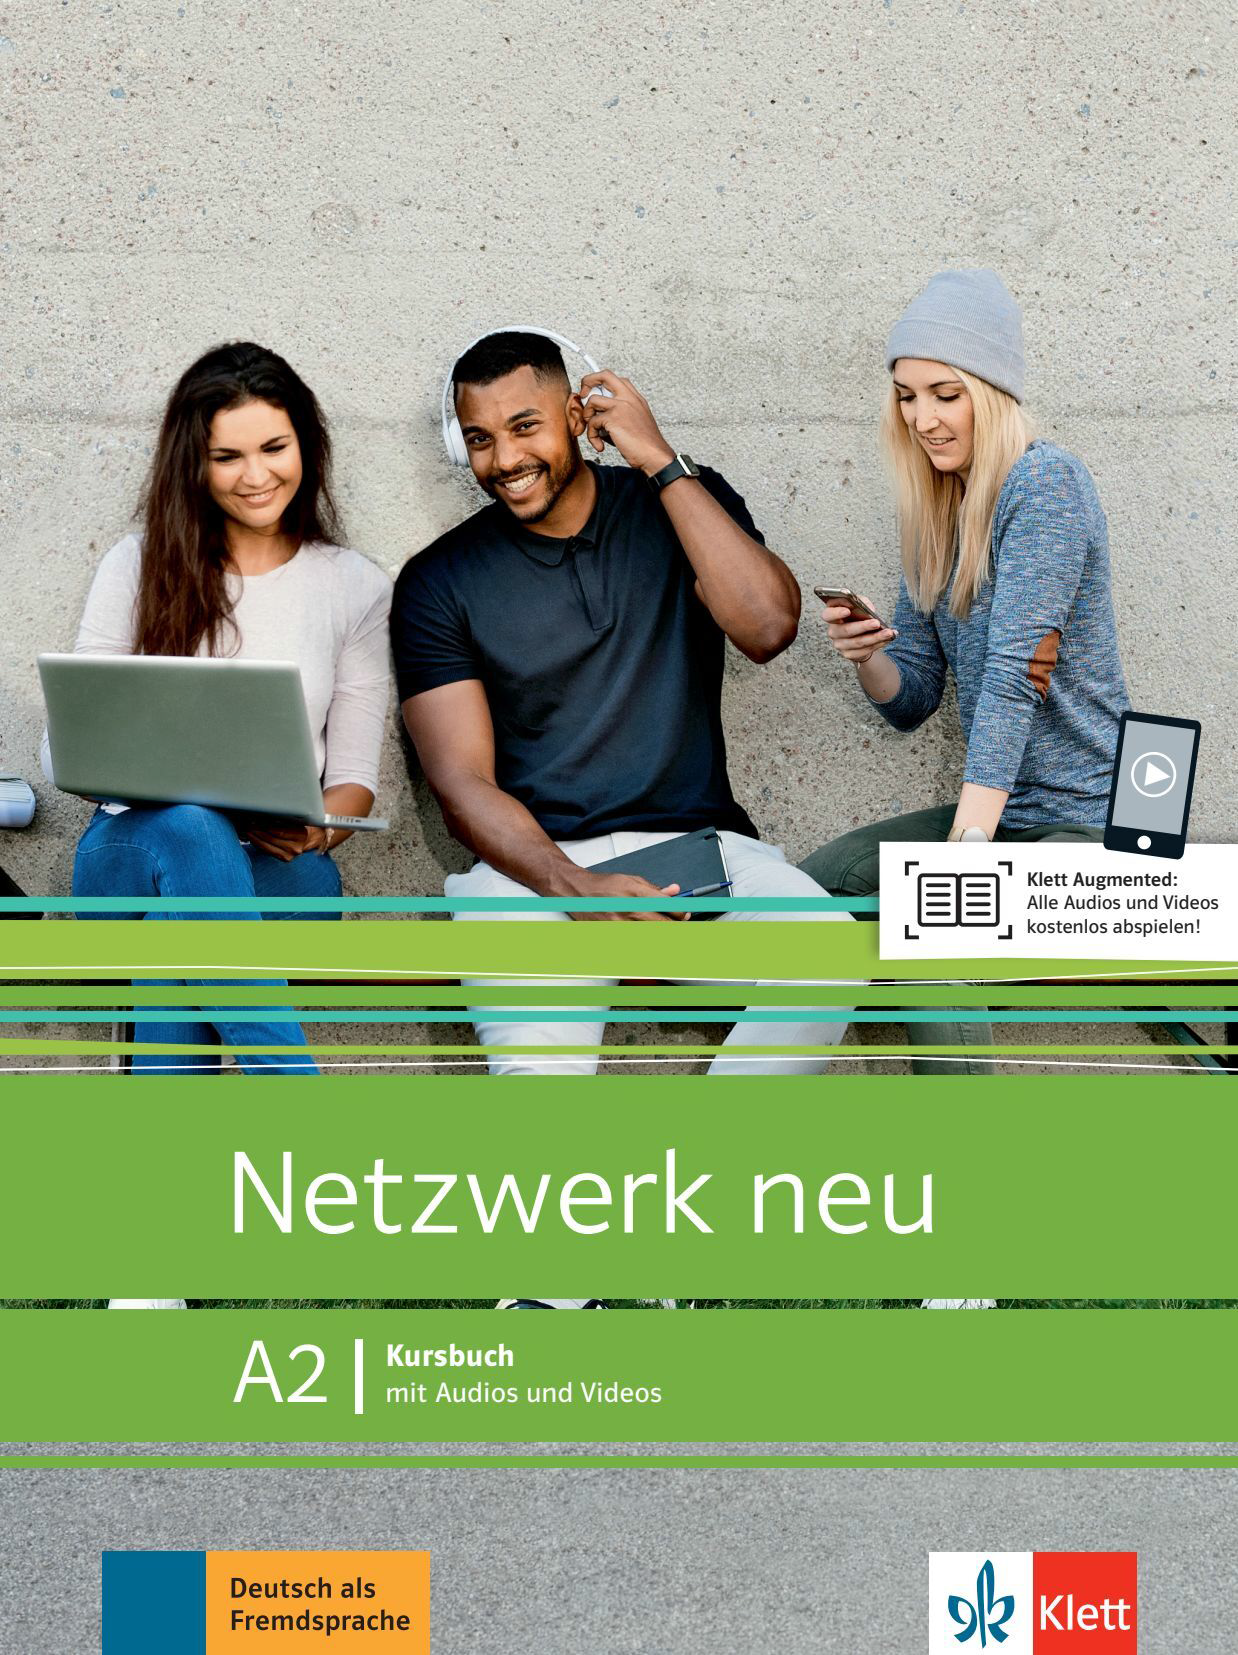 Netzwerk neu A2 interaktives Kursbuch